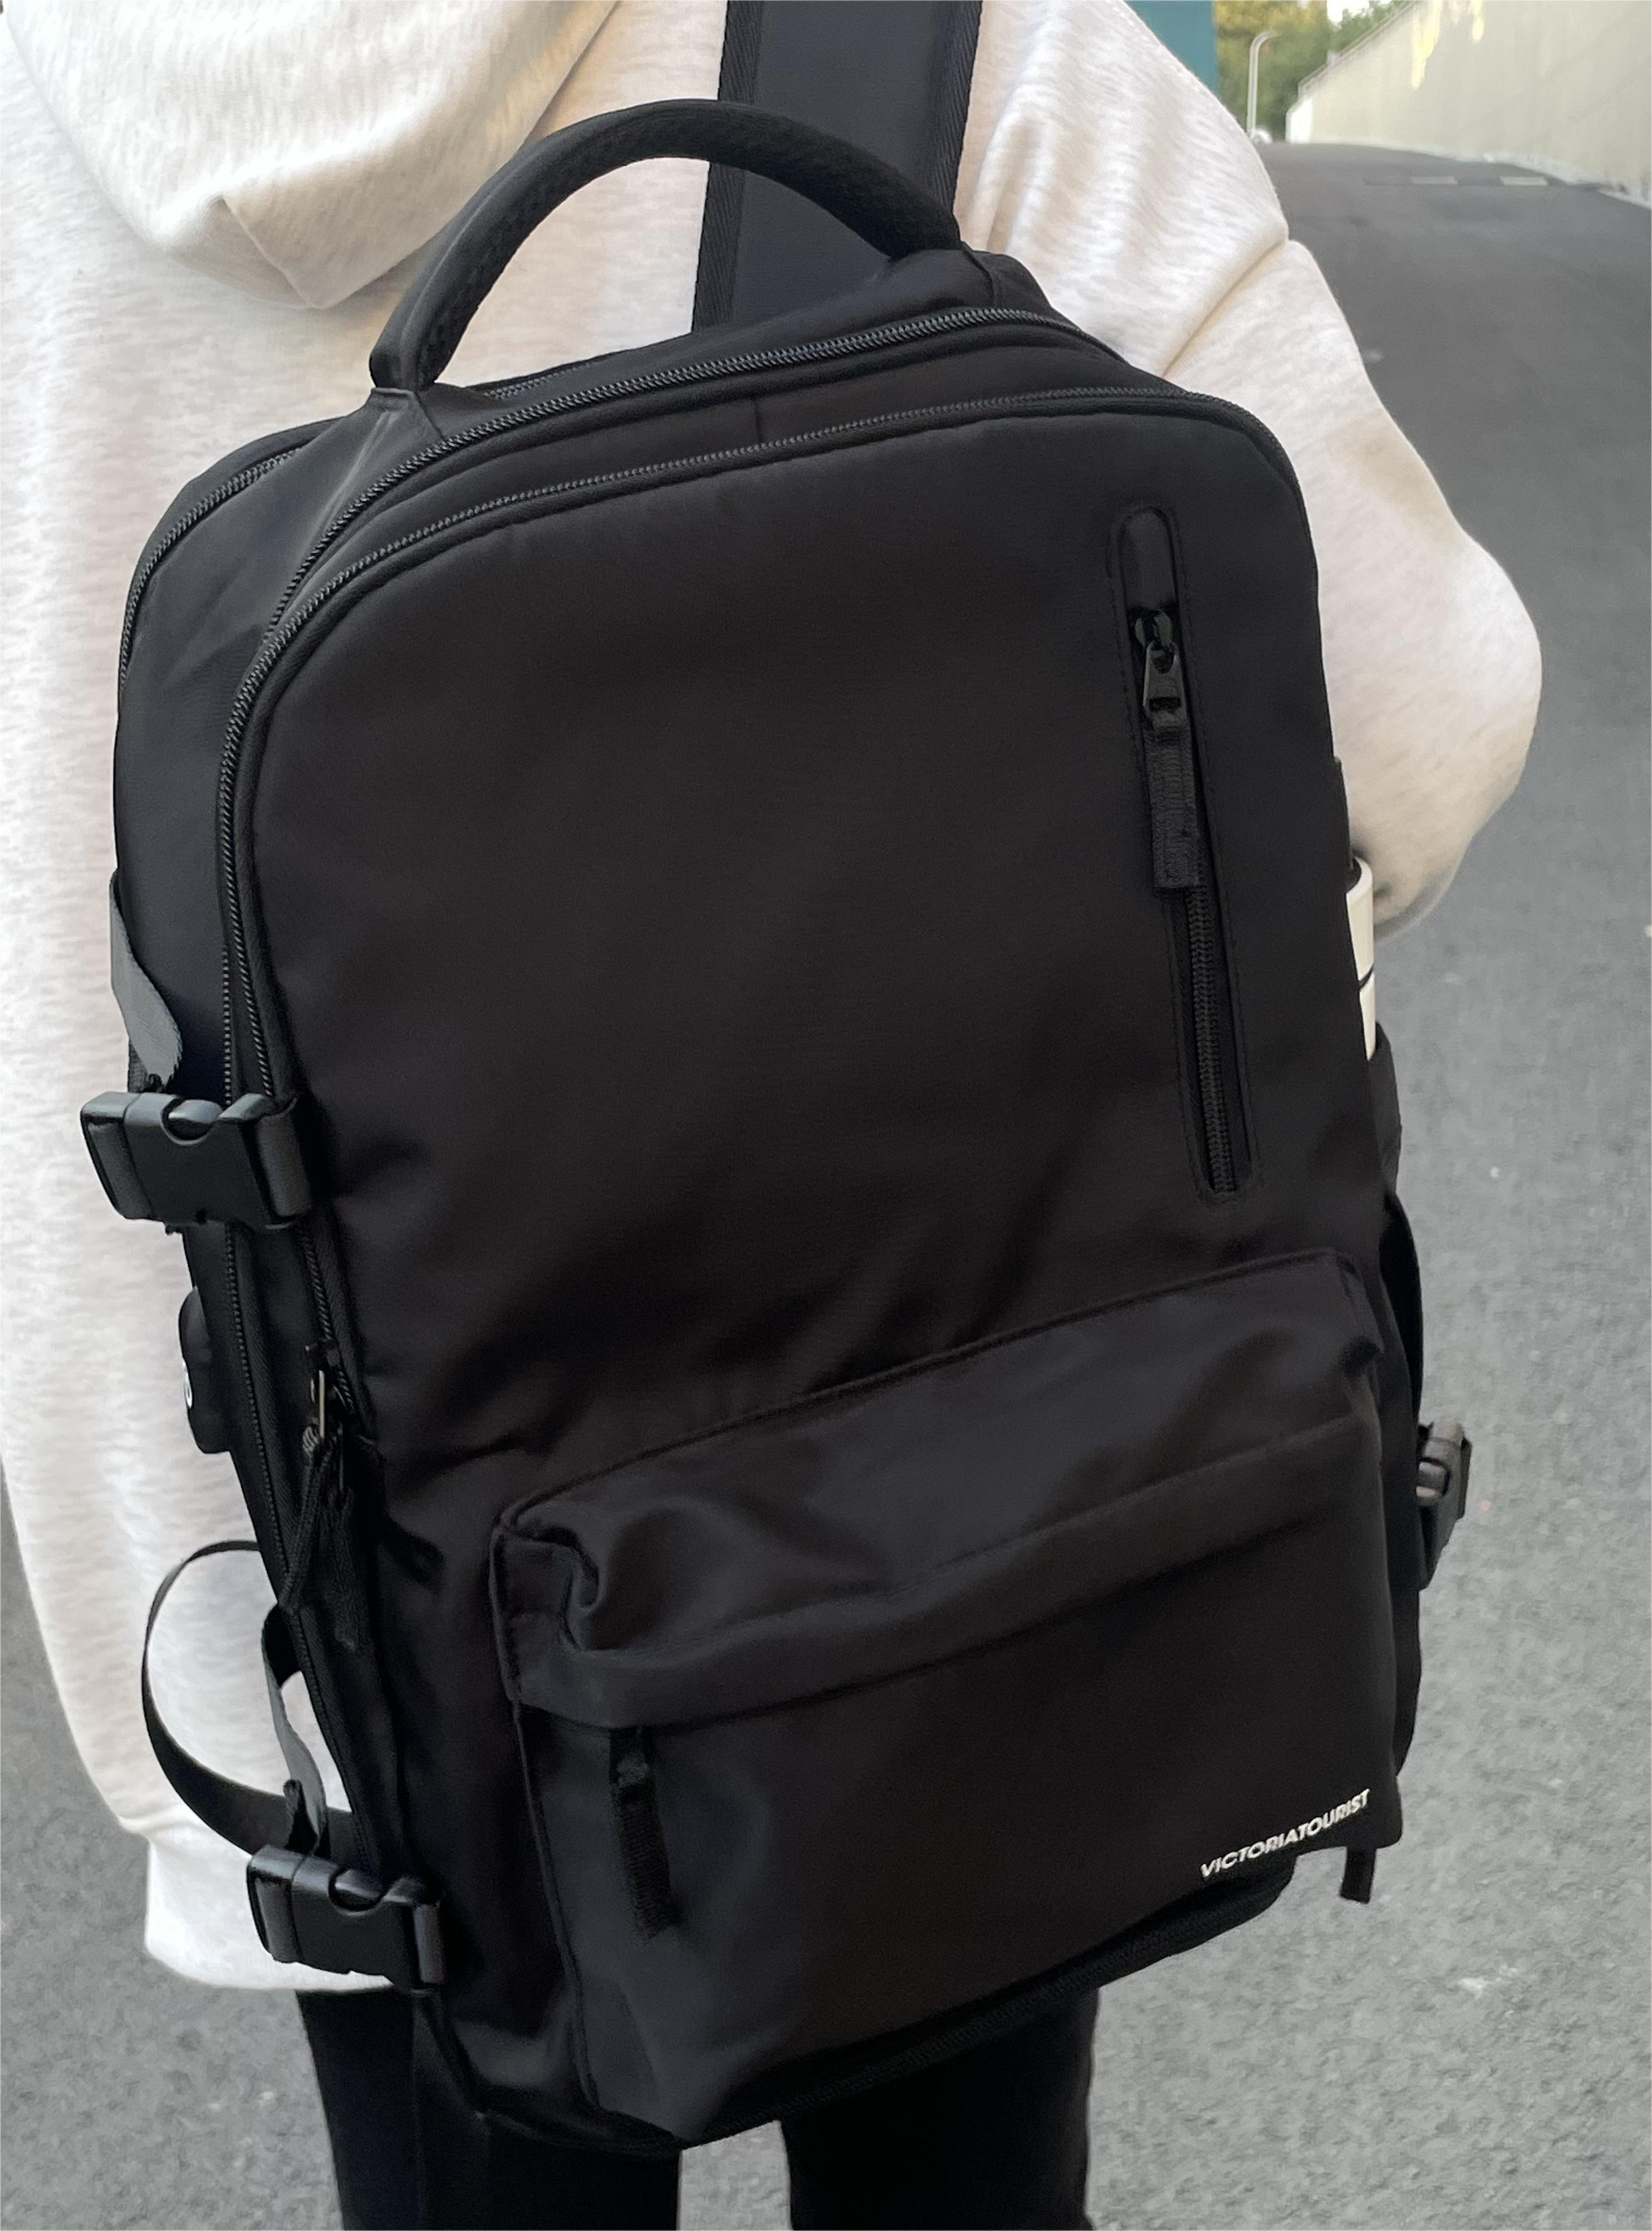 维多利亚旅行者双肩电脑包背包短途旅行登山包书包V7051